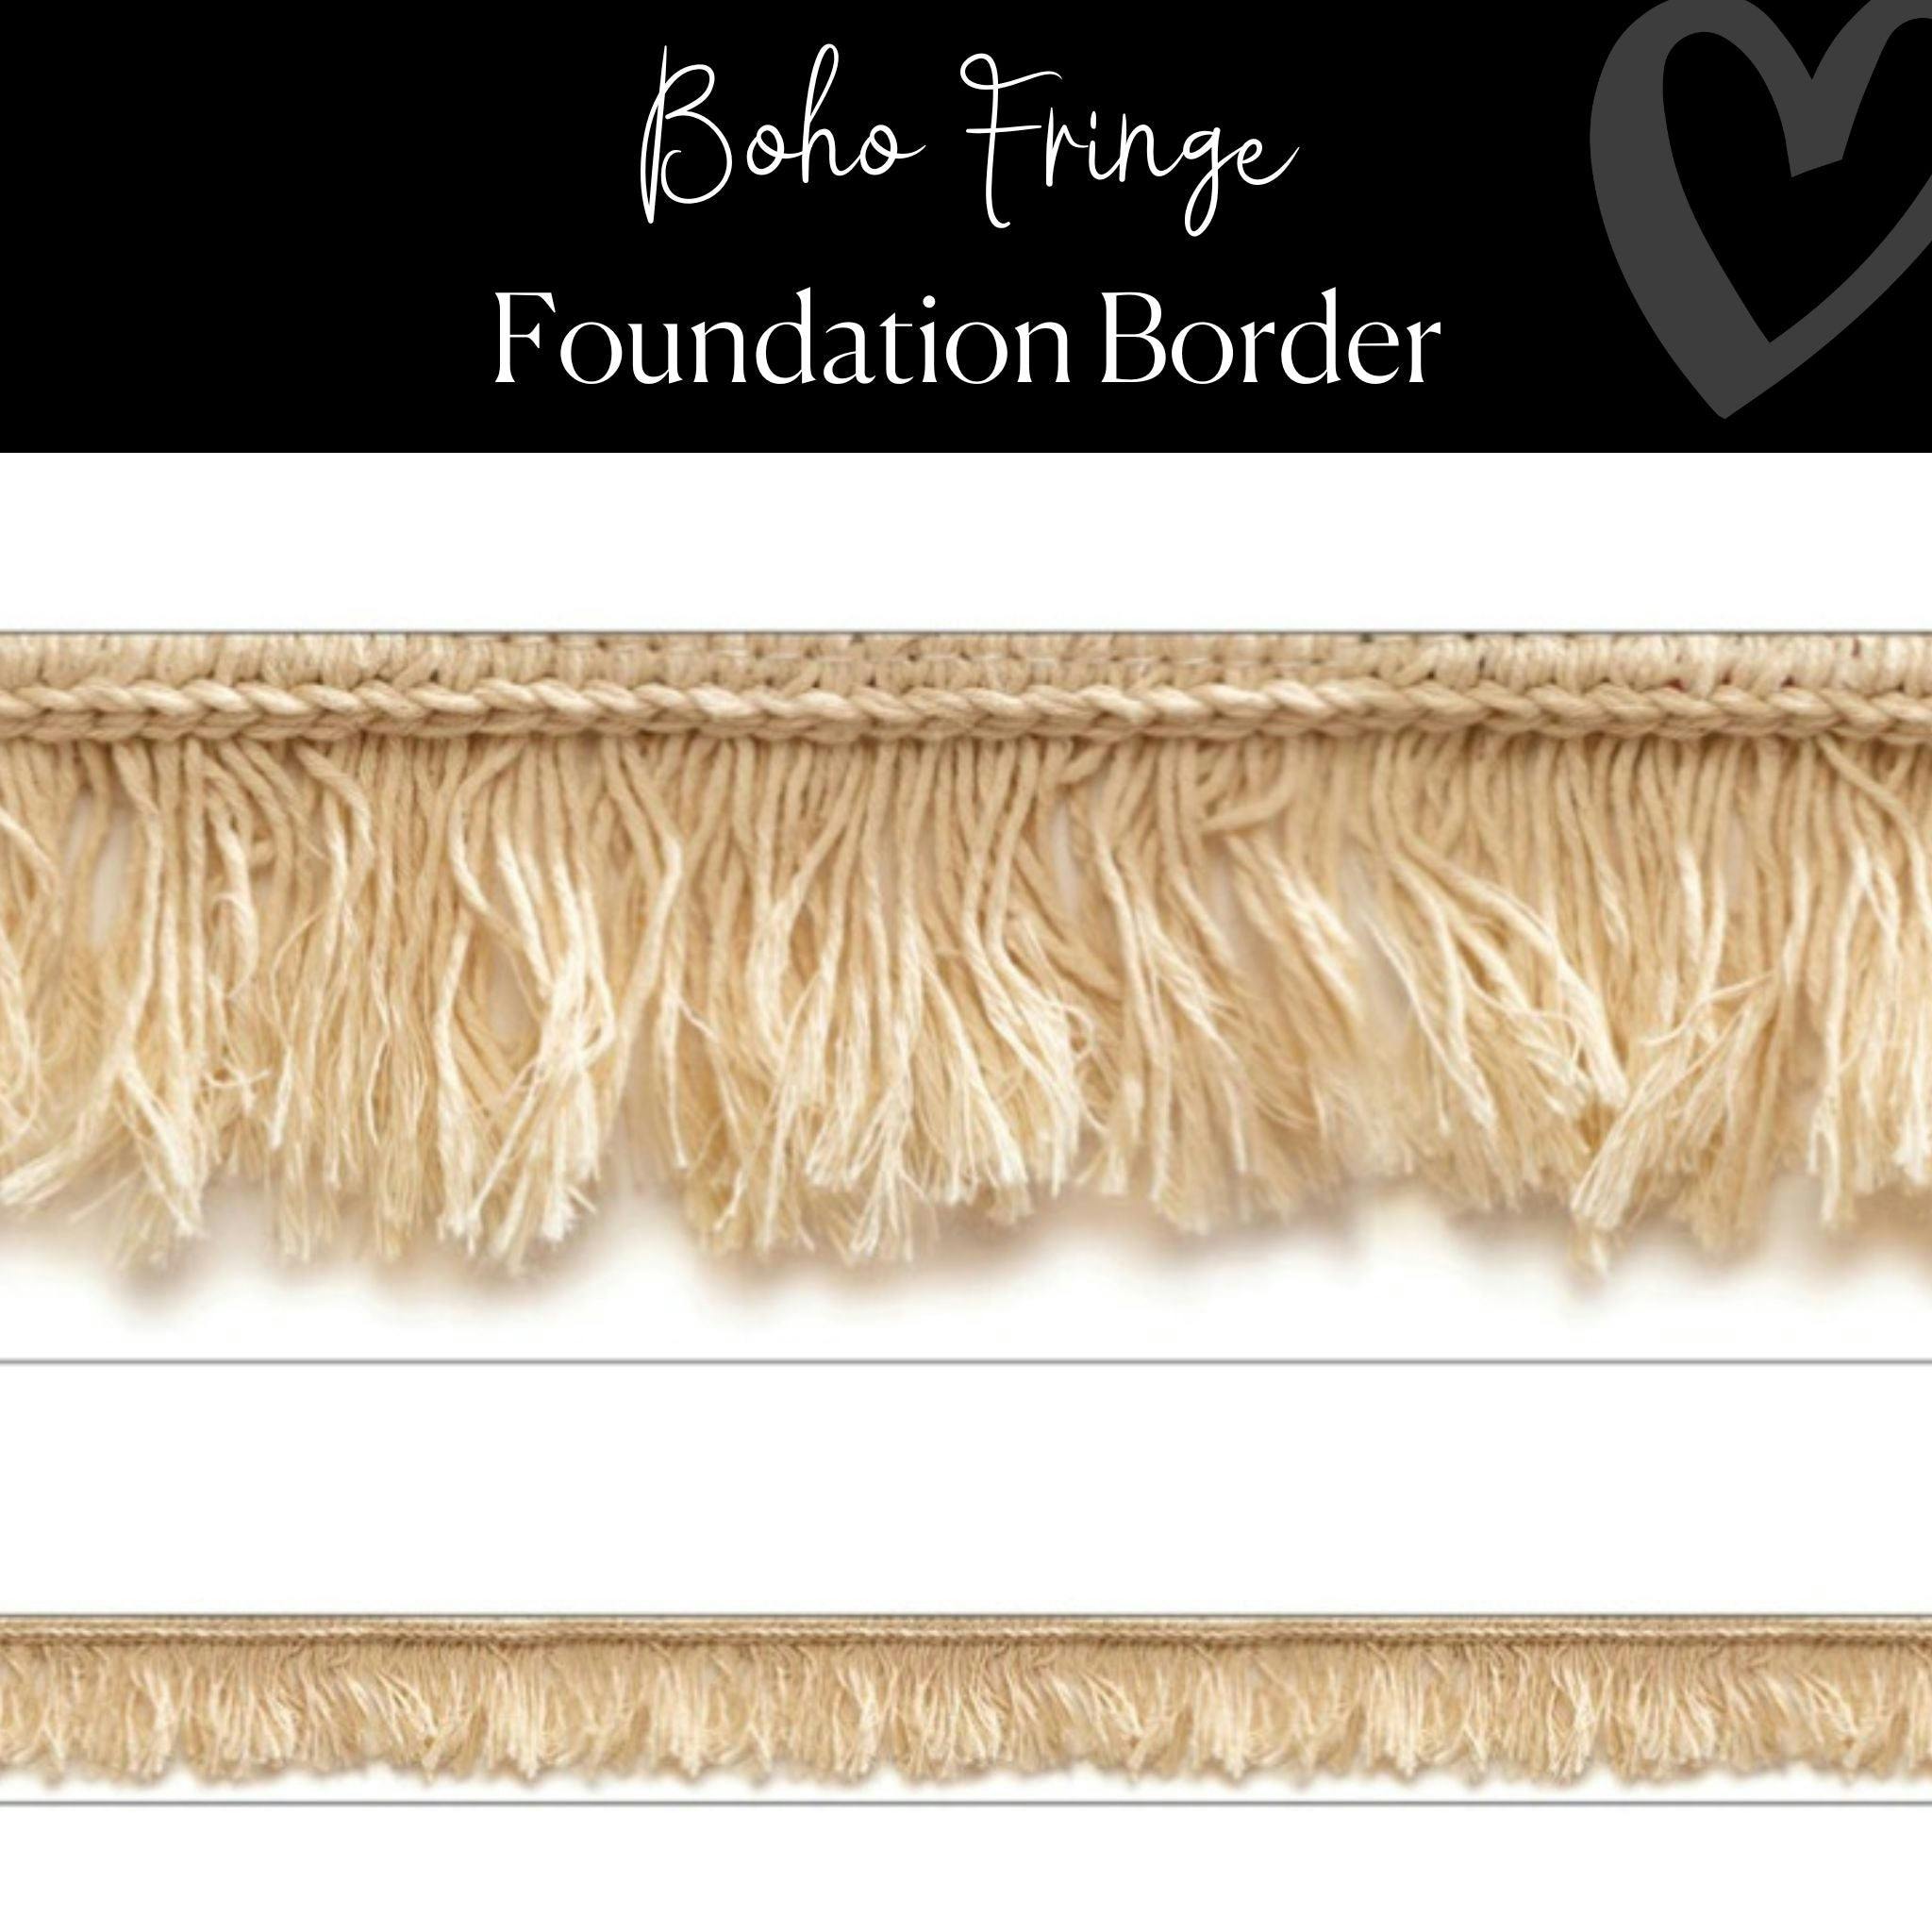 Boho | Fringe | Classroom Bulletin Board Border | "Boho Fringe" | Foundation Border | Simply Boho | Schoolgirl Style